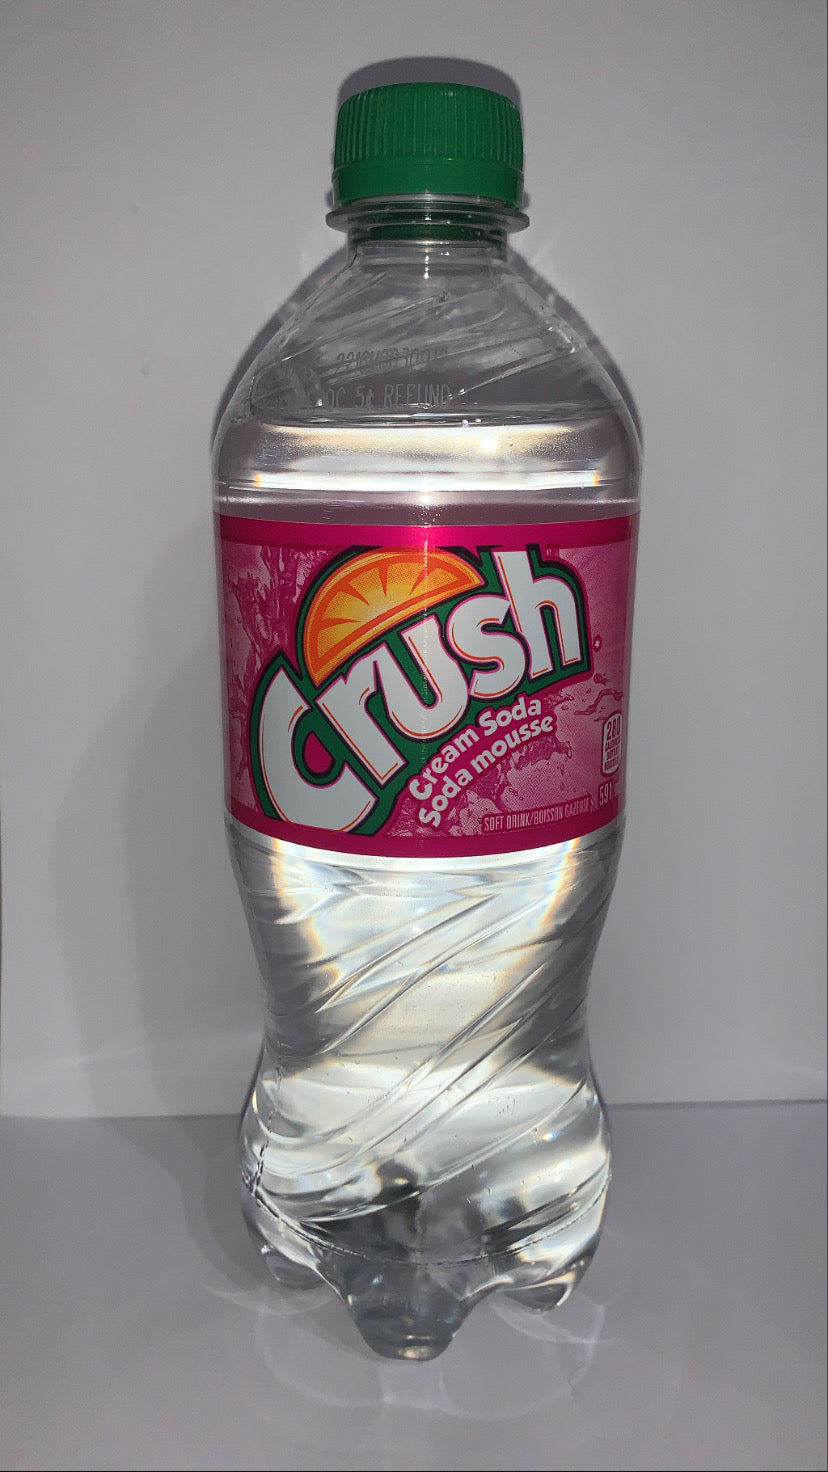 Crush cream soda mousse (Canada)